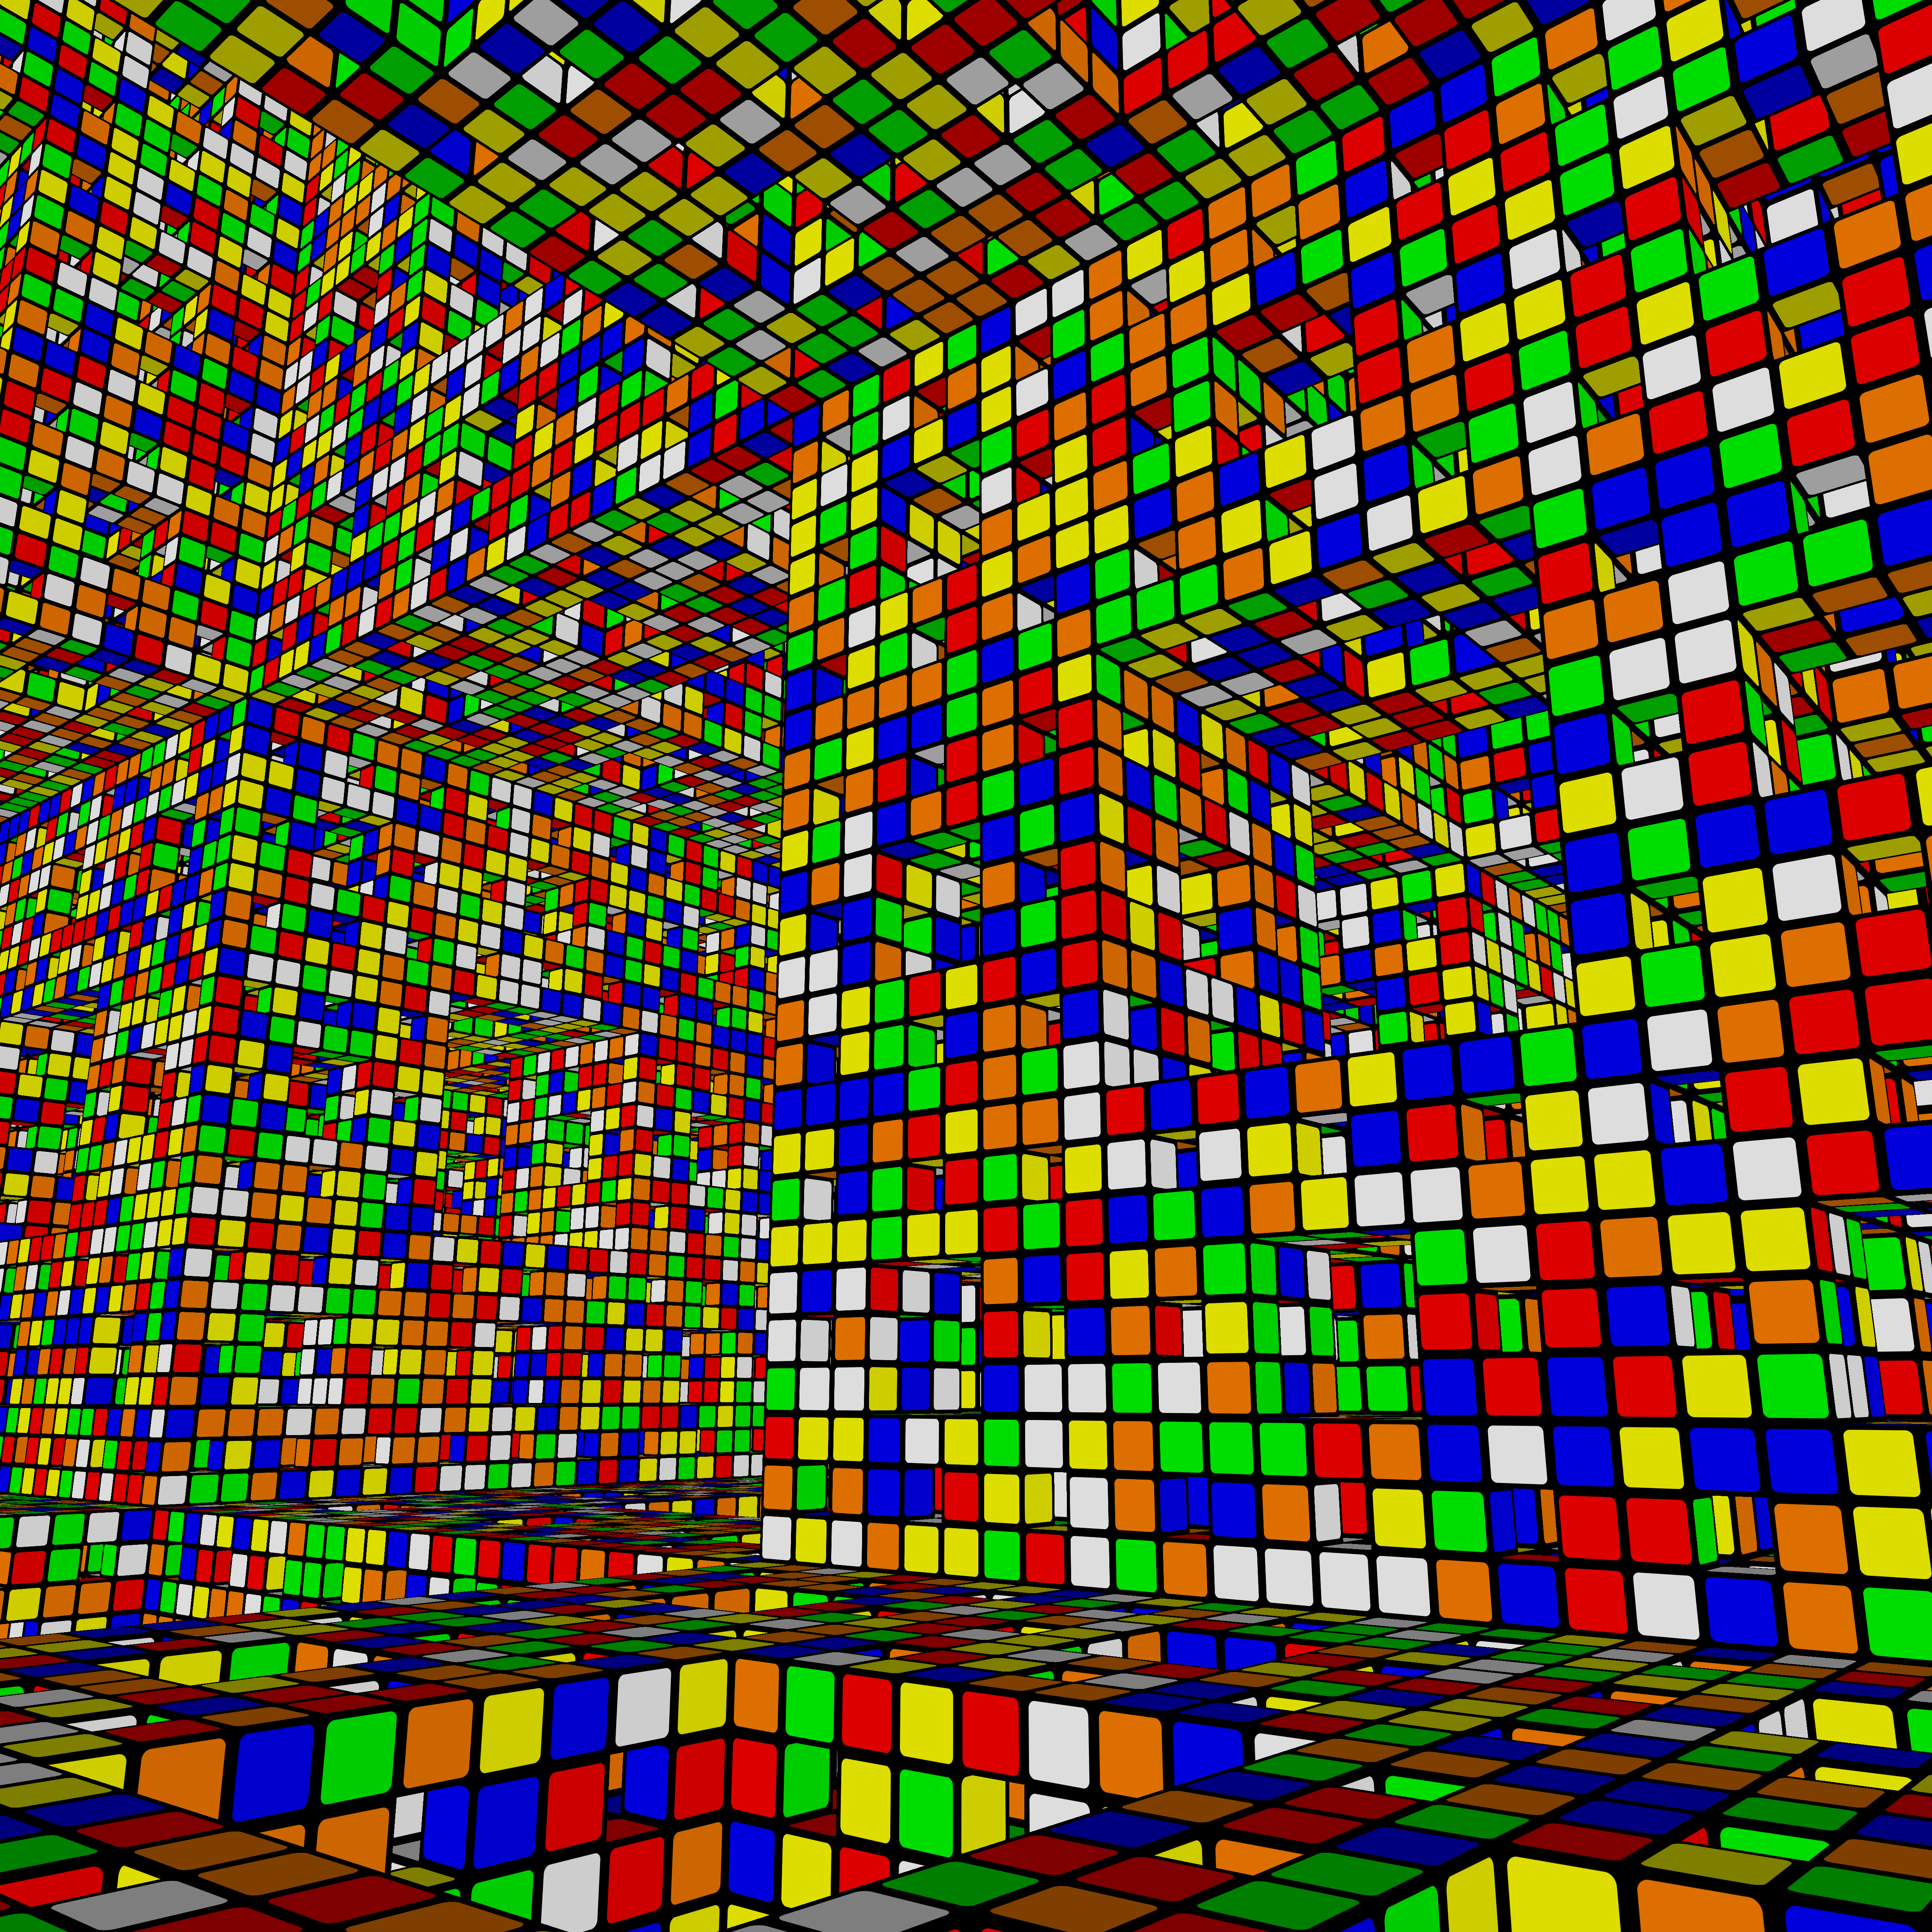 Rubik's Cube fractal widescreen wallpaper. JGM